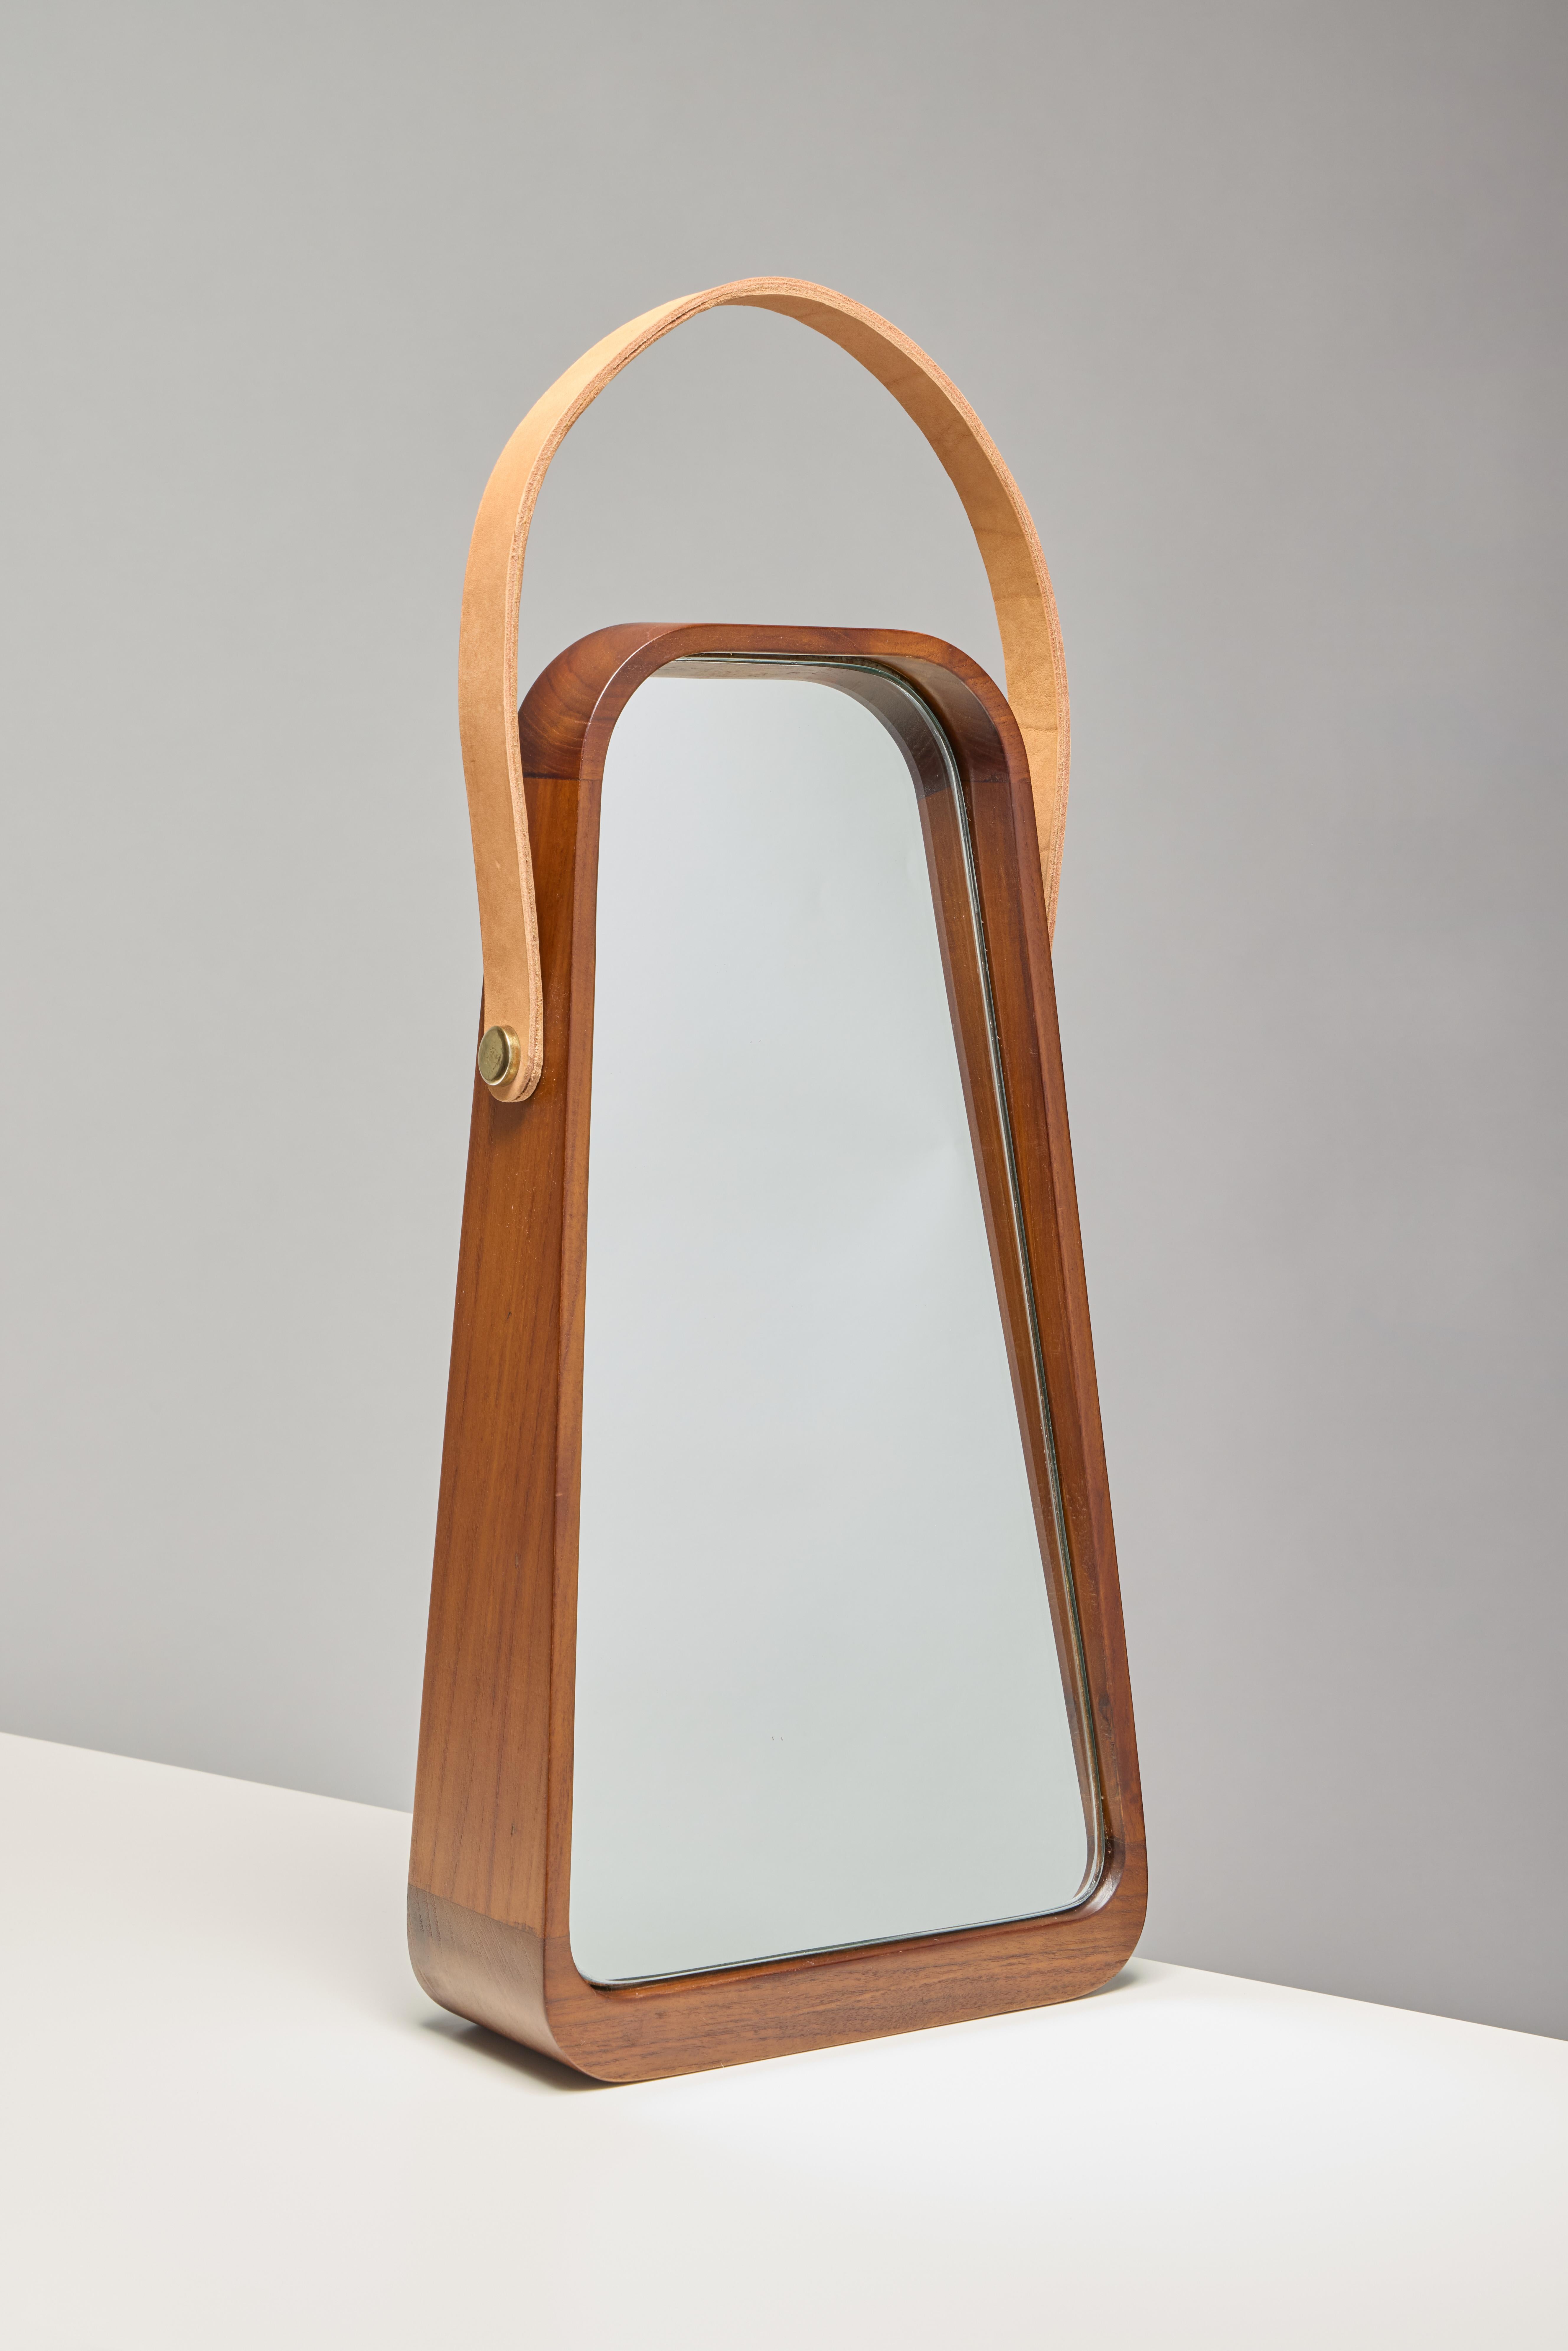 Tischspiegel. Holzrahmen und fester, geneigter Miroir integriert.
Teakholz in natürlicher Ausführung auf Wasserbasis.
Spiegelglas 5mm / Spiegel anse in natürlichem Leder.

Abmessungen: 269 x 95/45 x h500 mm

Dieses Produkt ist handgefertigt. Jedes